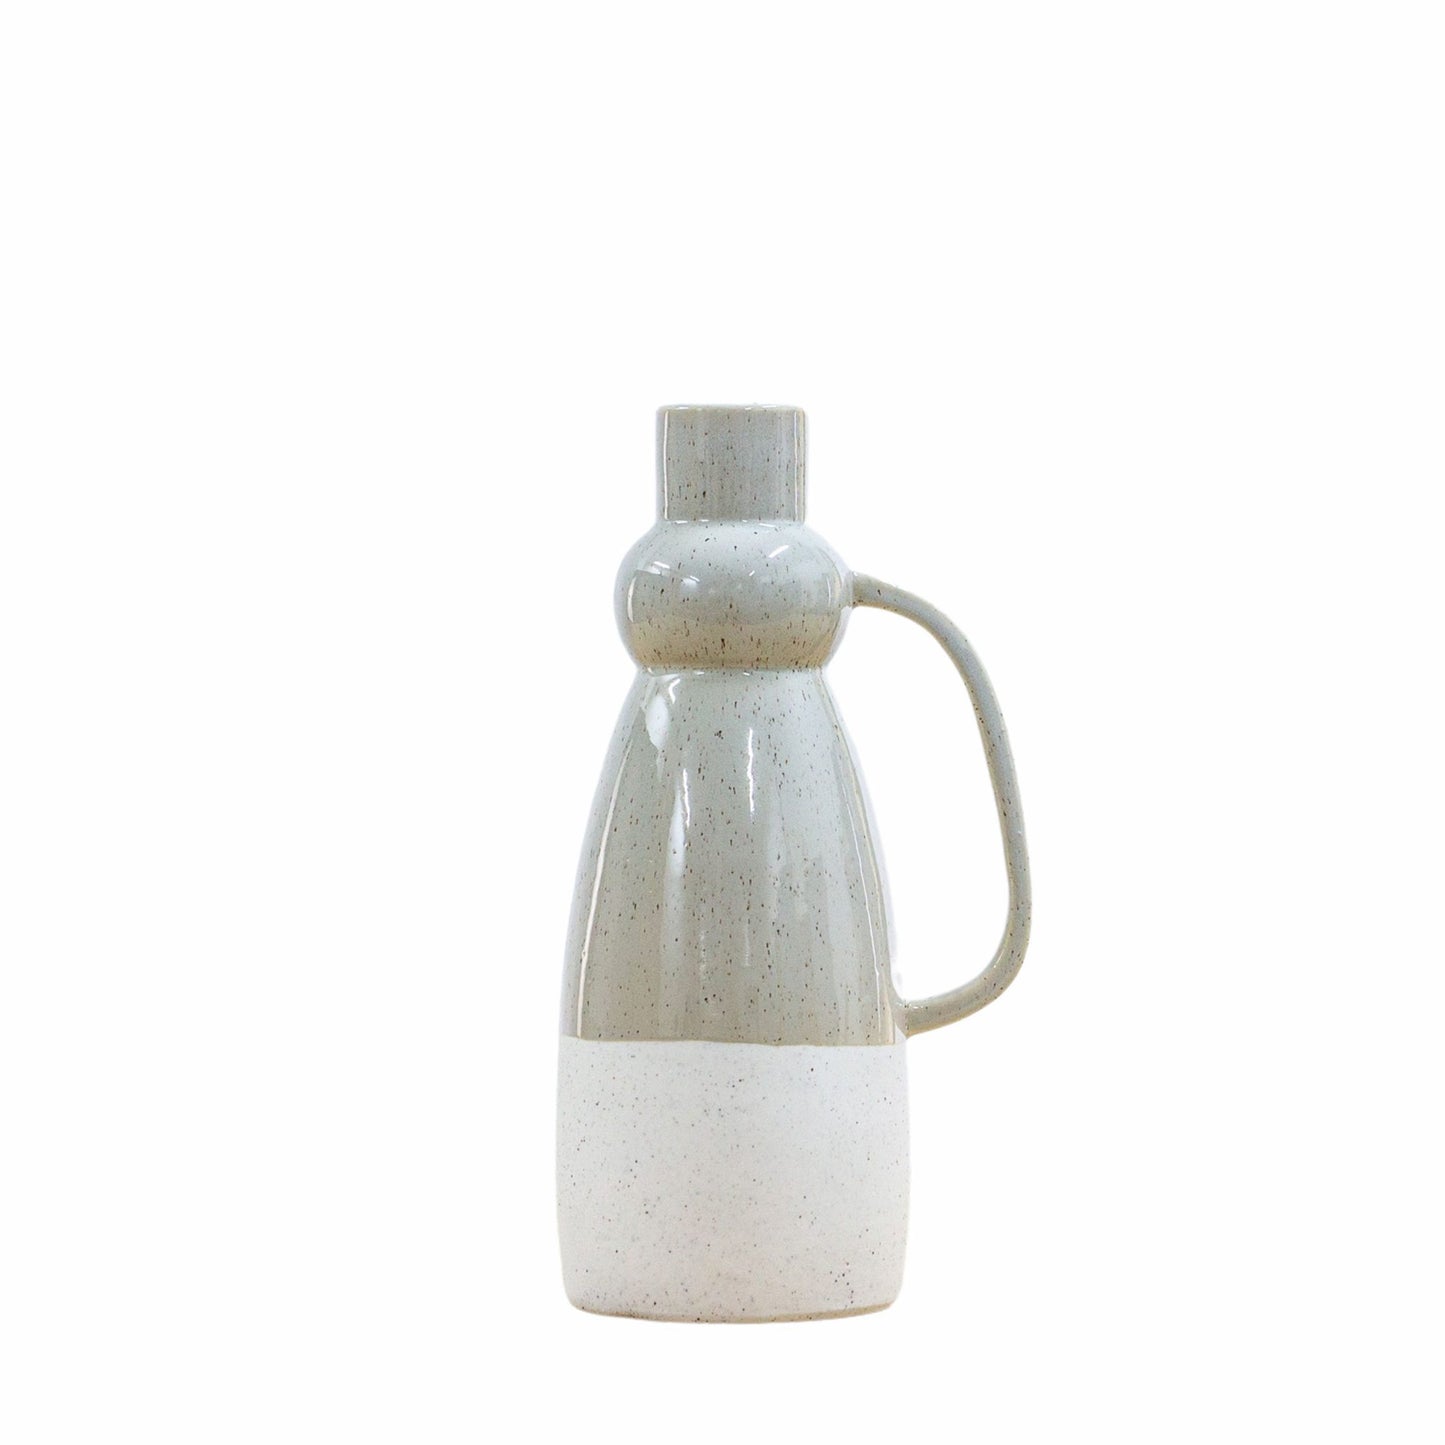 crandon-vase-light-grey-with-handle-large-scaled